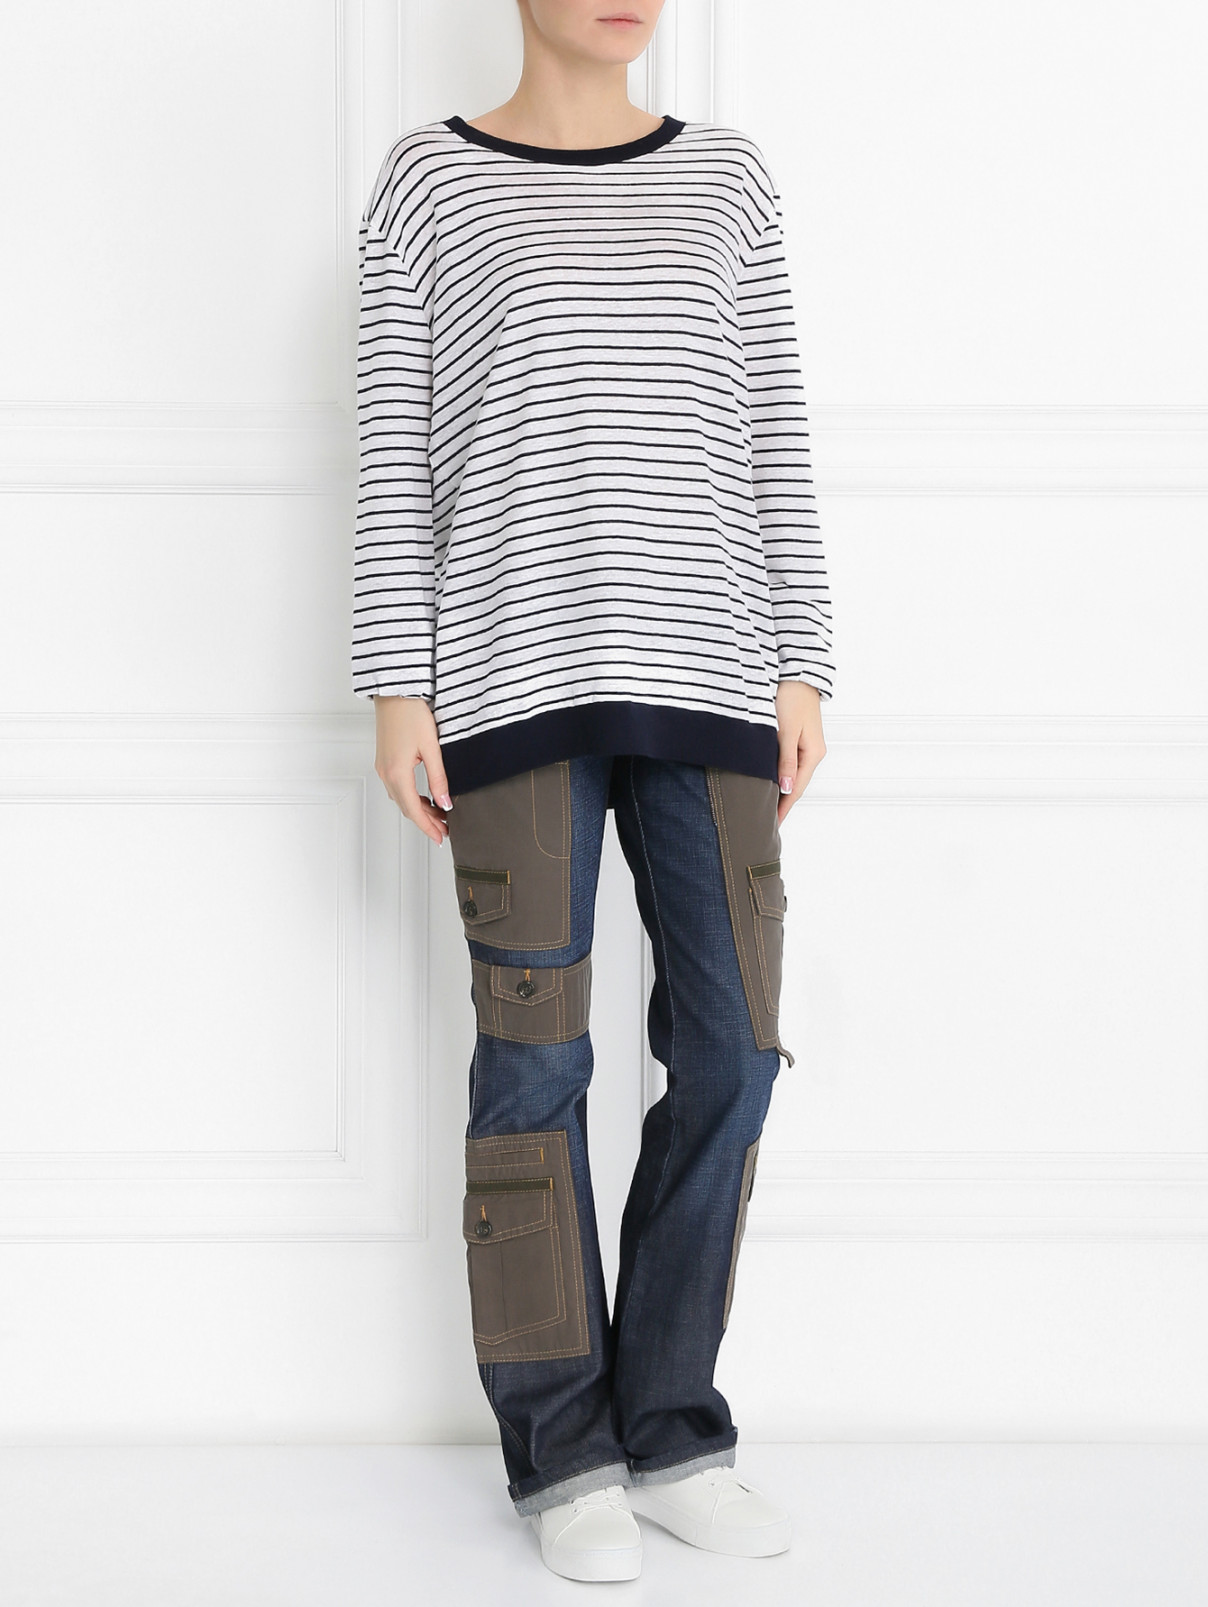 Джинсы с контрастными вставками Moschino Jeans  –  Модель Общий вид  – Цвет:  Синий